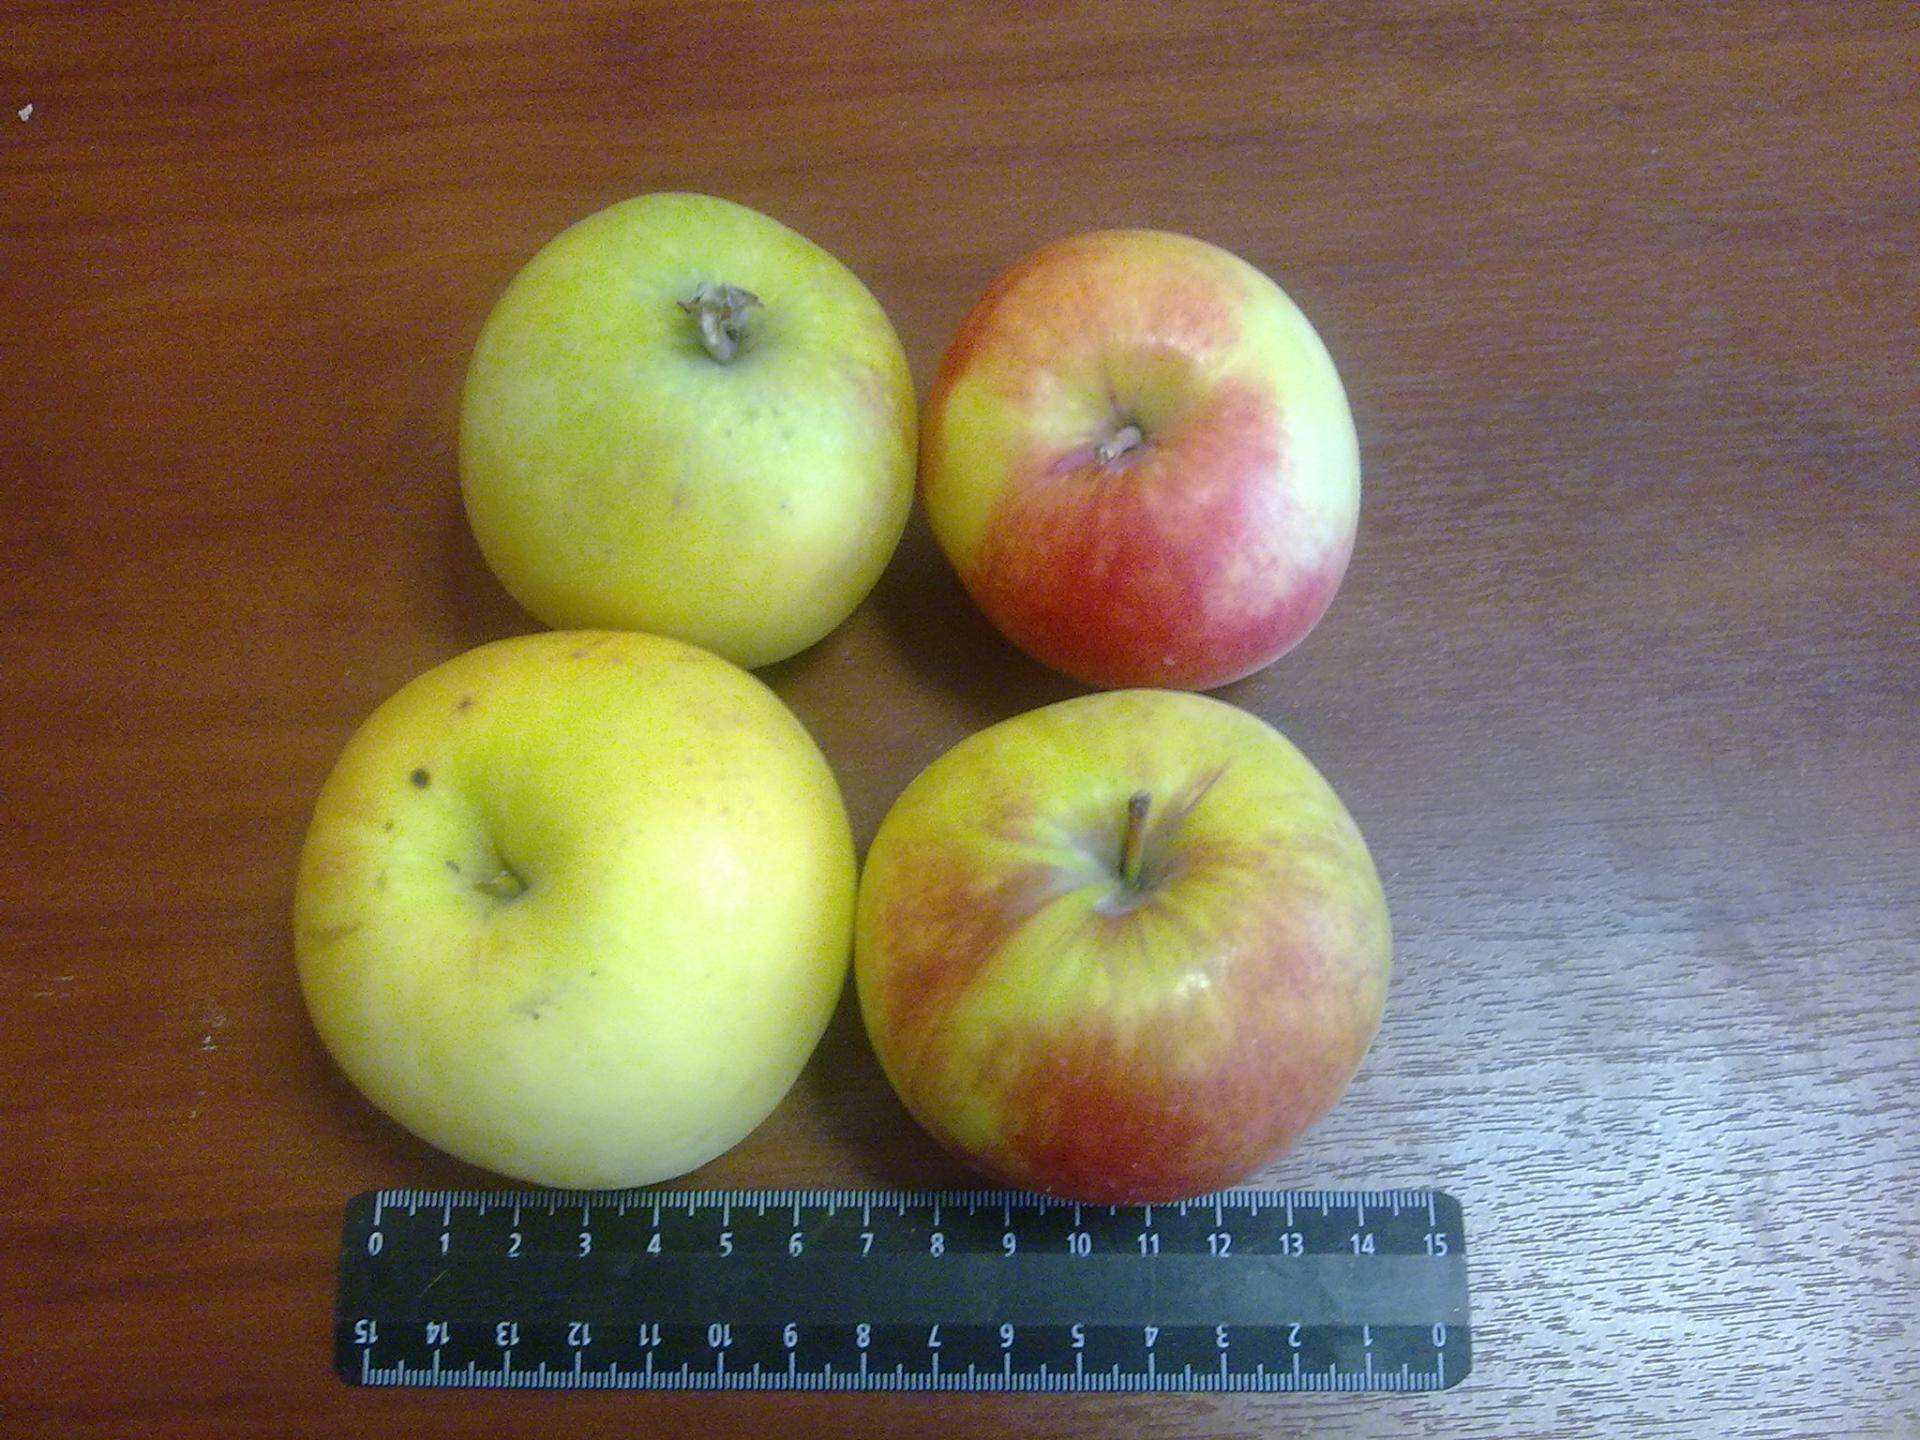 Описание яблони северный синап – фото, отзывы, правила выращивания сорта